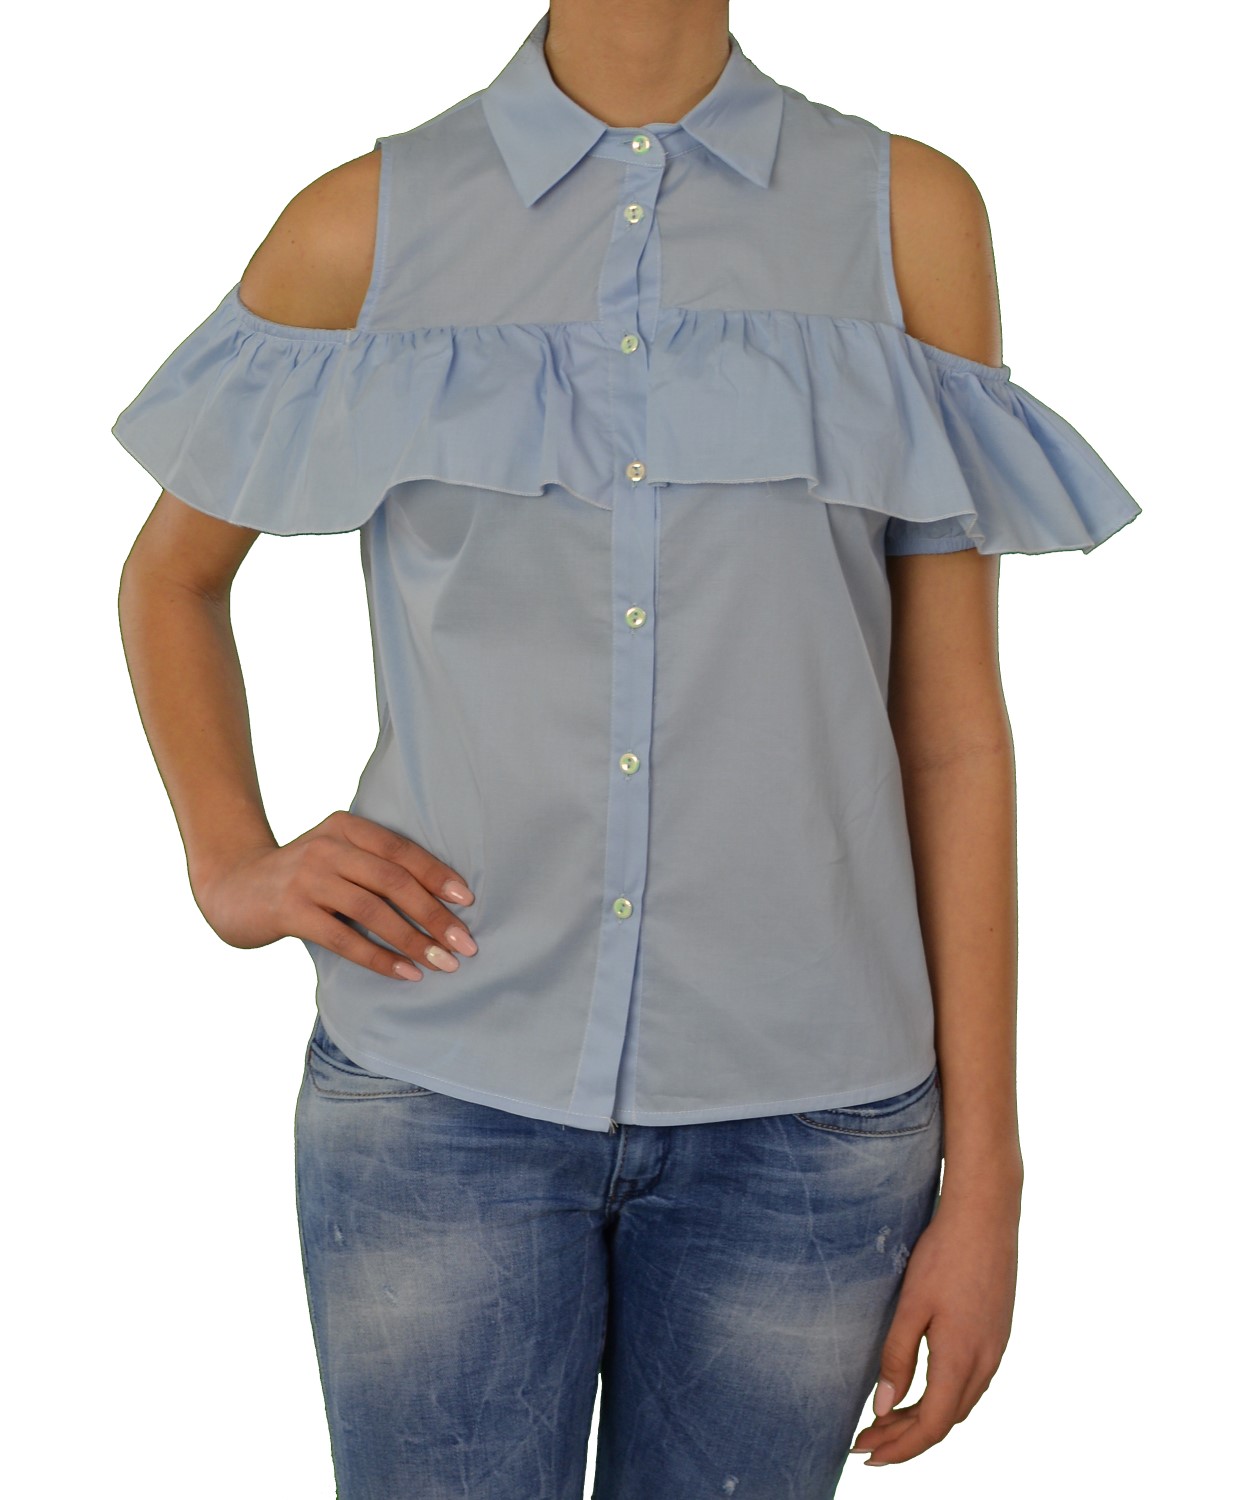 Γυναικείο πουκάμισο Lipsy γαλάζιο με βολάν 1170505V